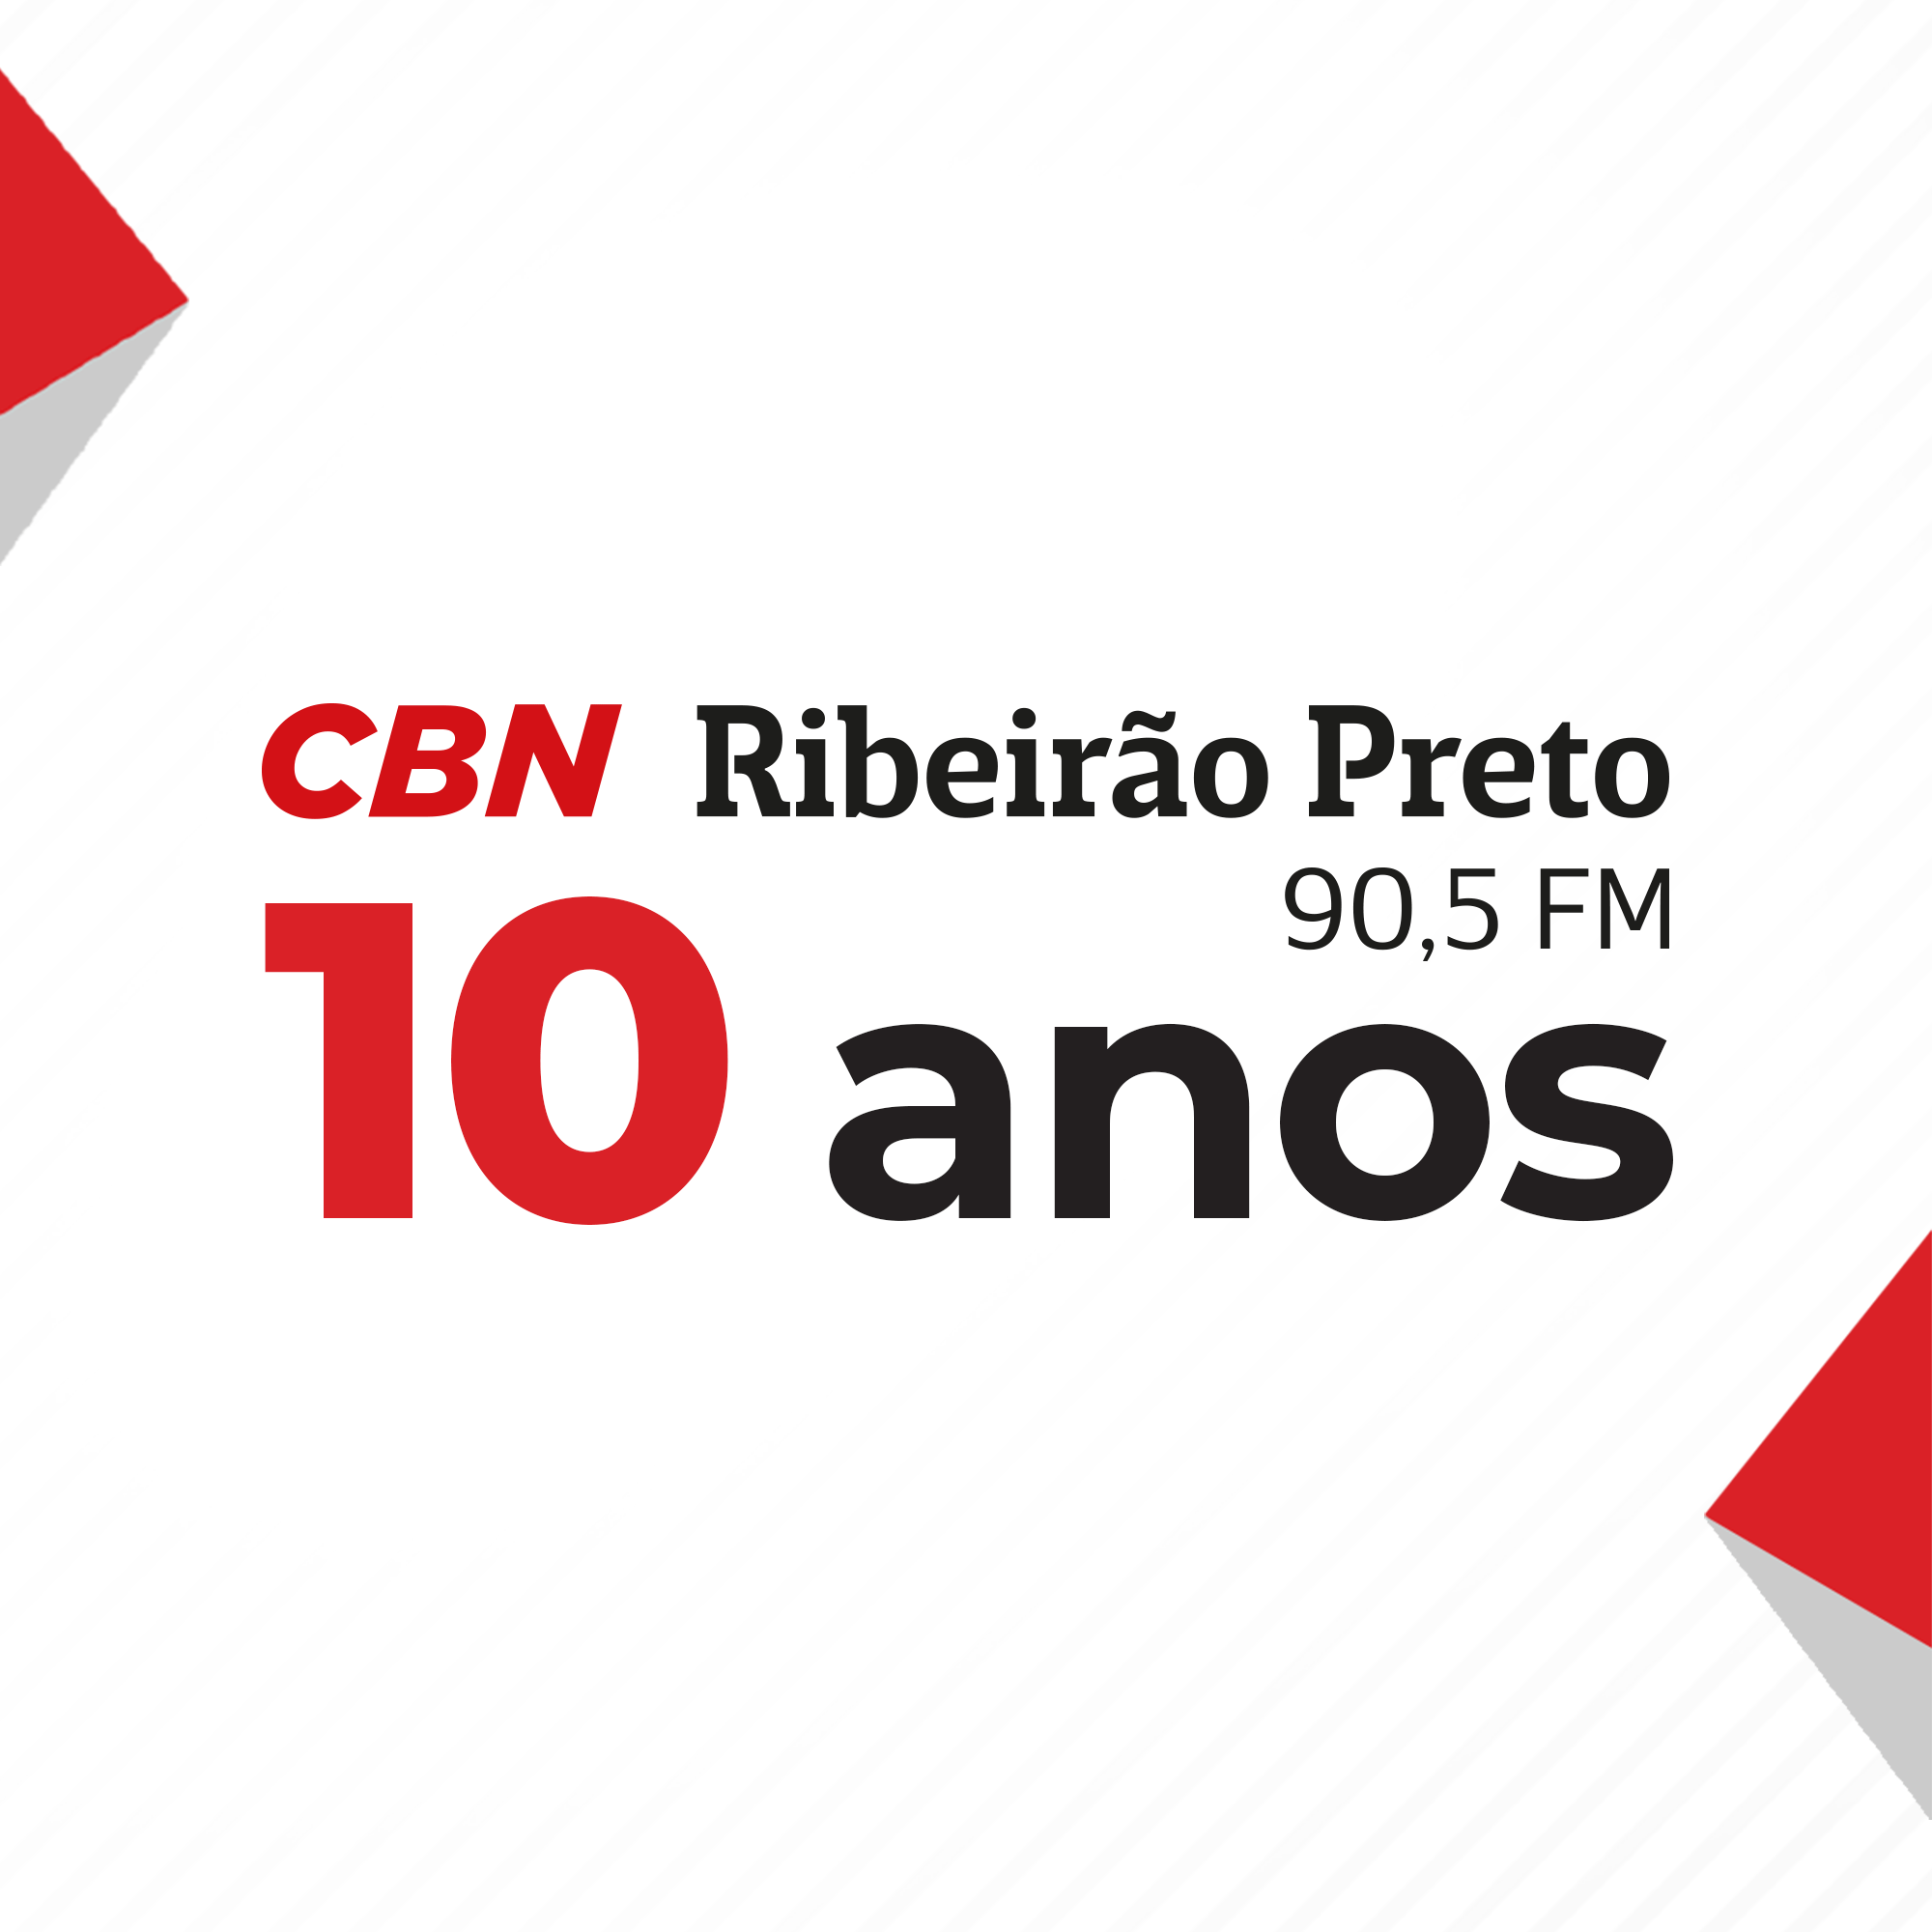 Especial 10 anos CBN Ribeirão